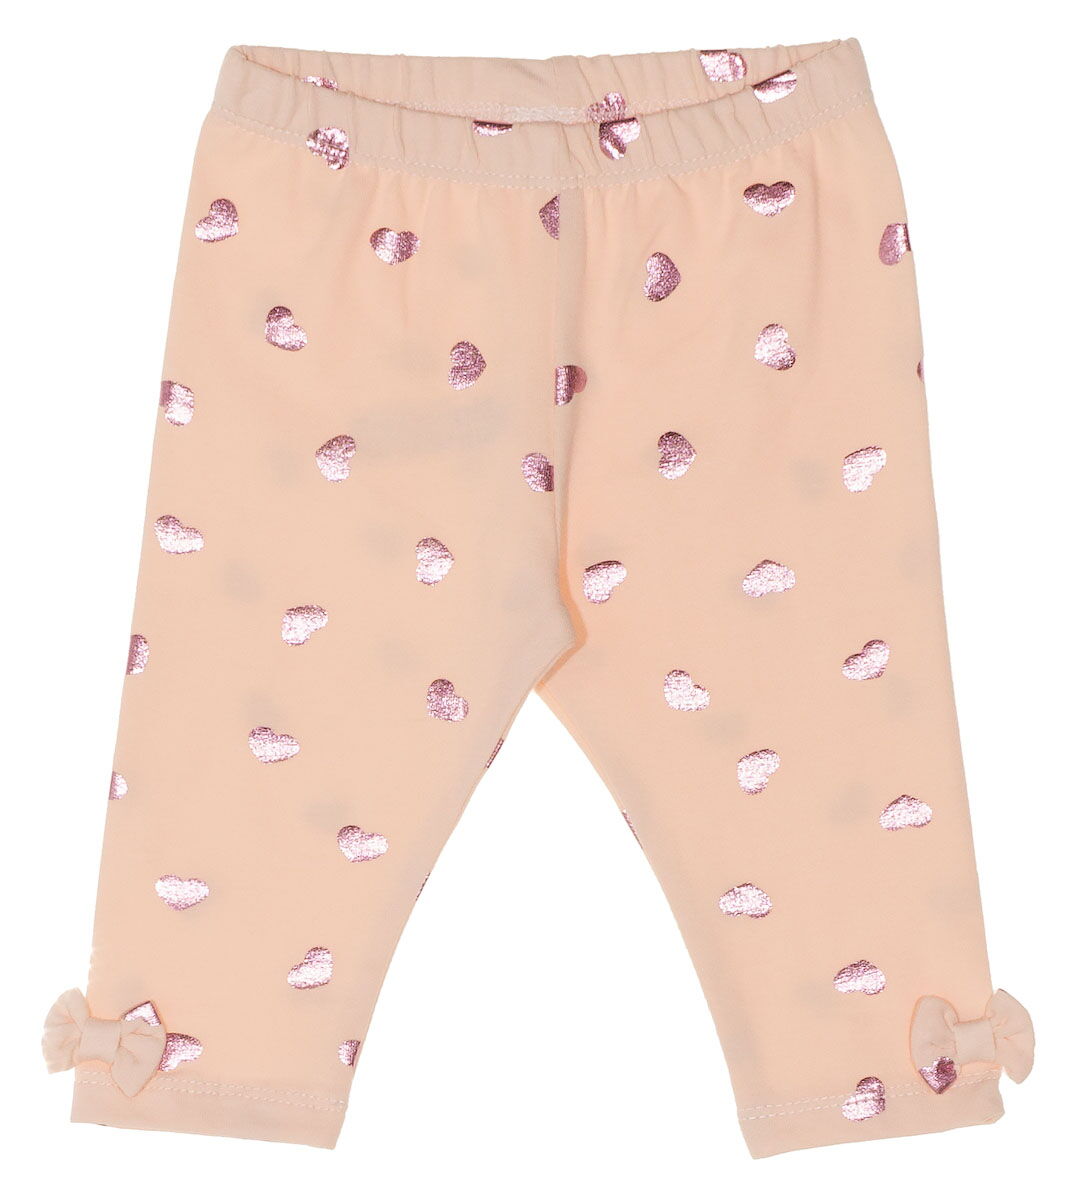 Нарядный комплект туника и бриджи для девочки Фламинго розовый 654-427 - размеры